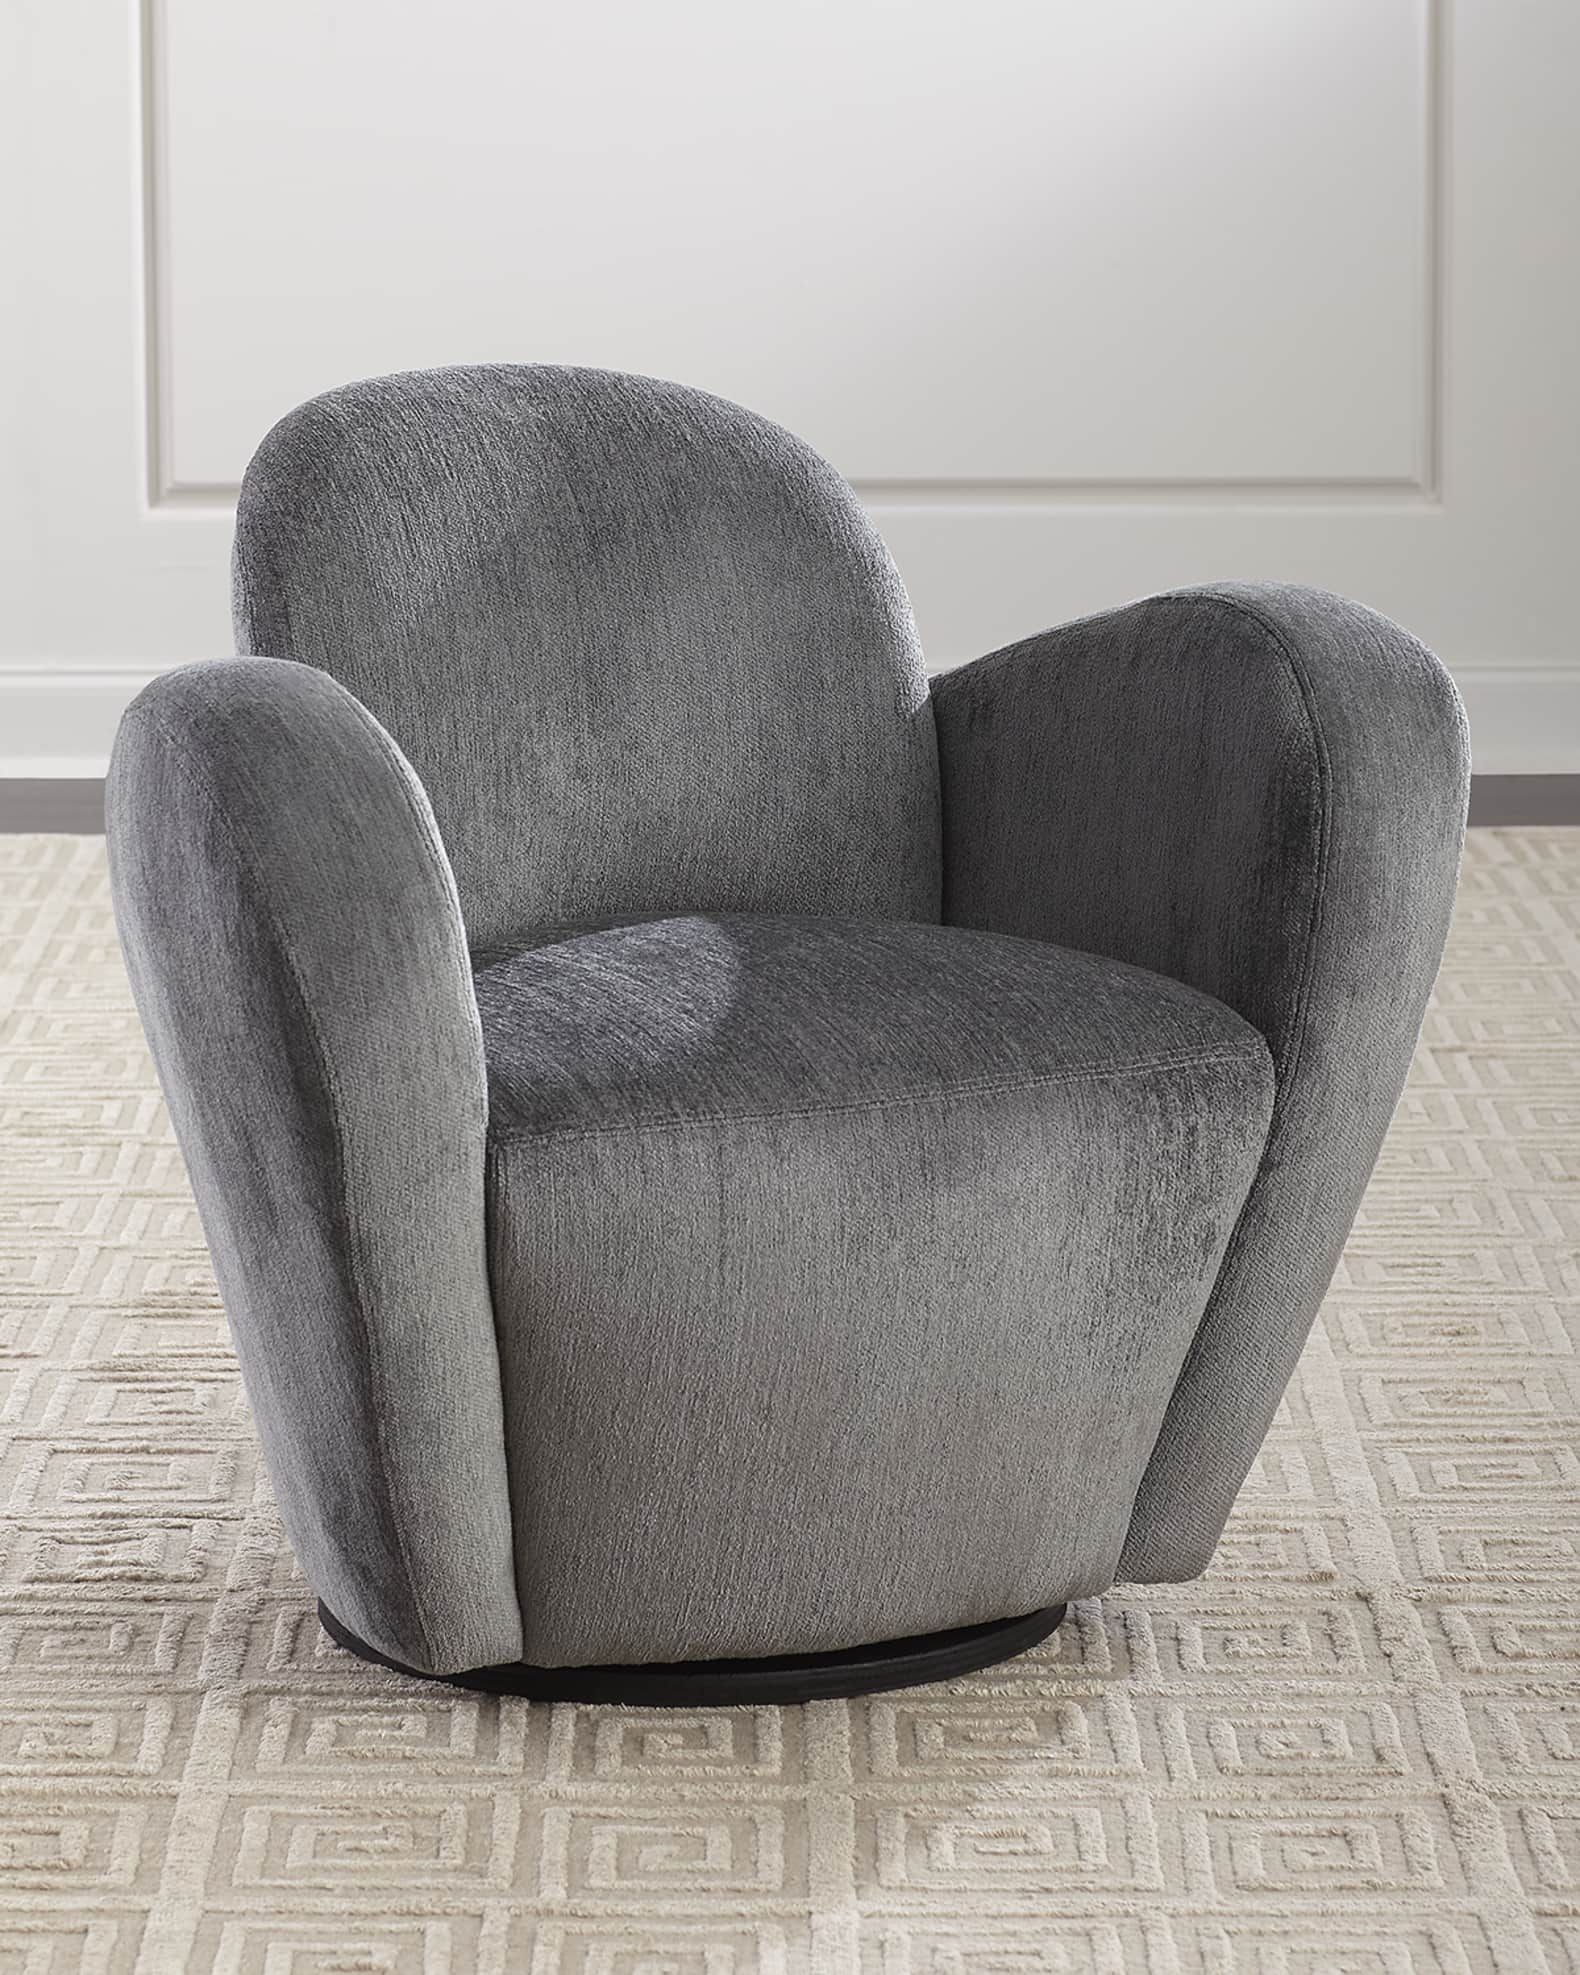 Interlude Home Miami Swivel Chair